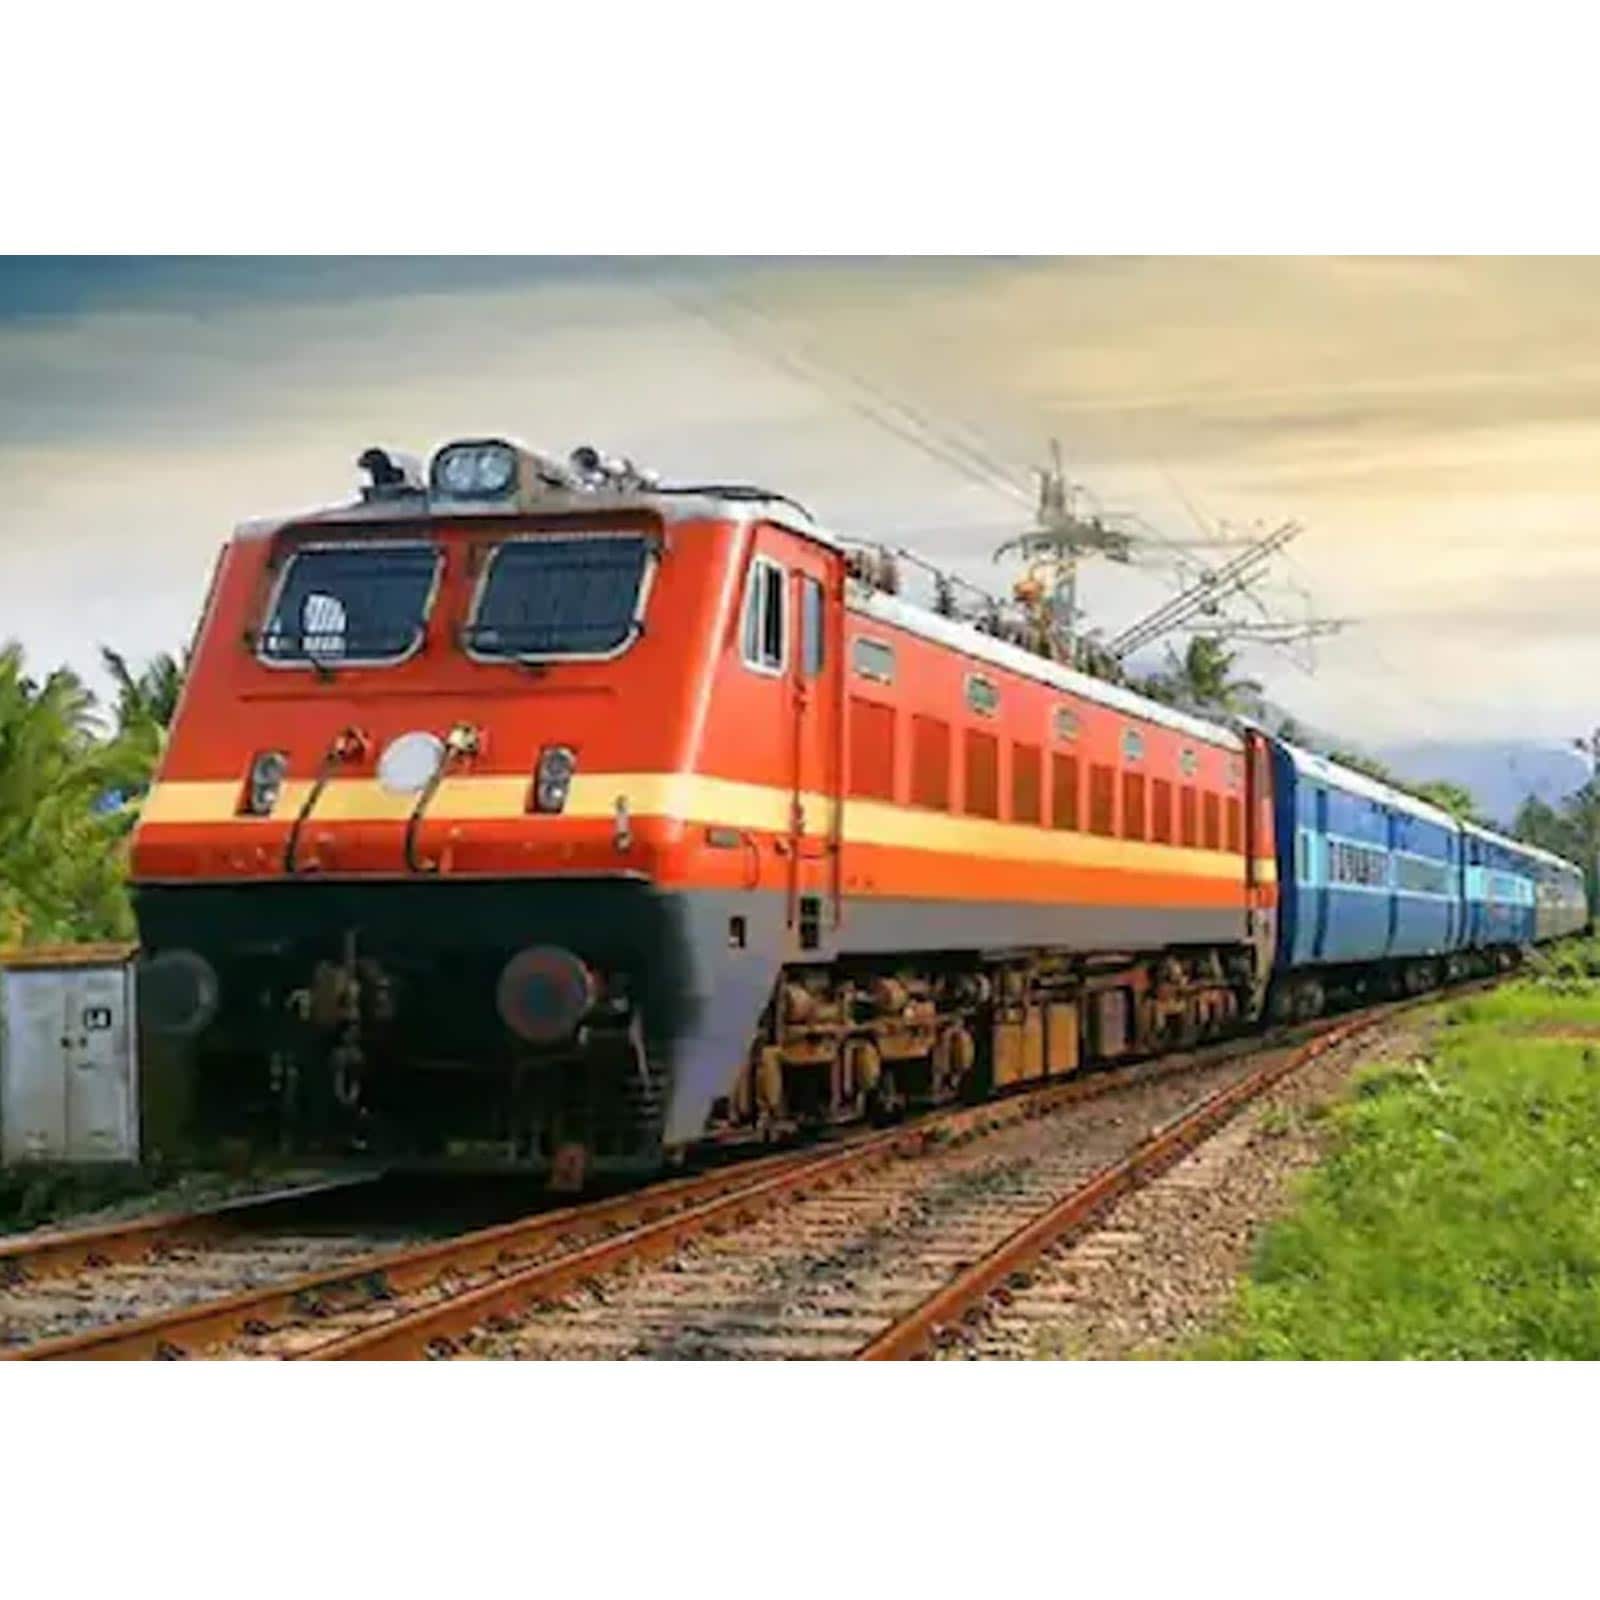 नॉन इंटरलॉकिंग के चलते बिलासपुर से नागपुर रूट की कई ट्रेन कैंसल की गयीं